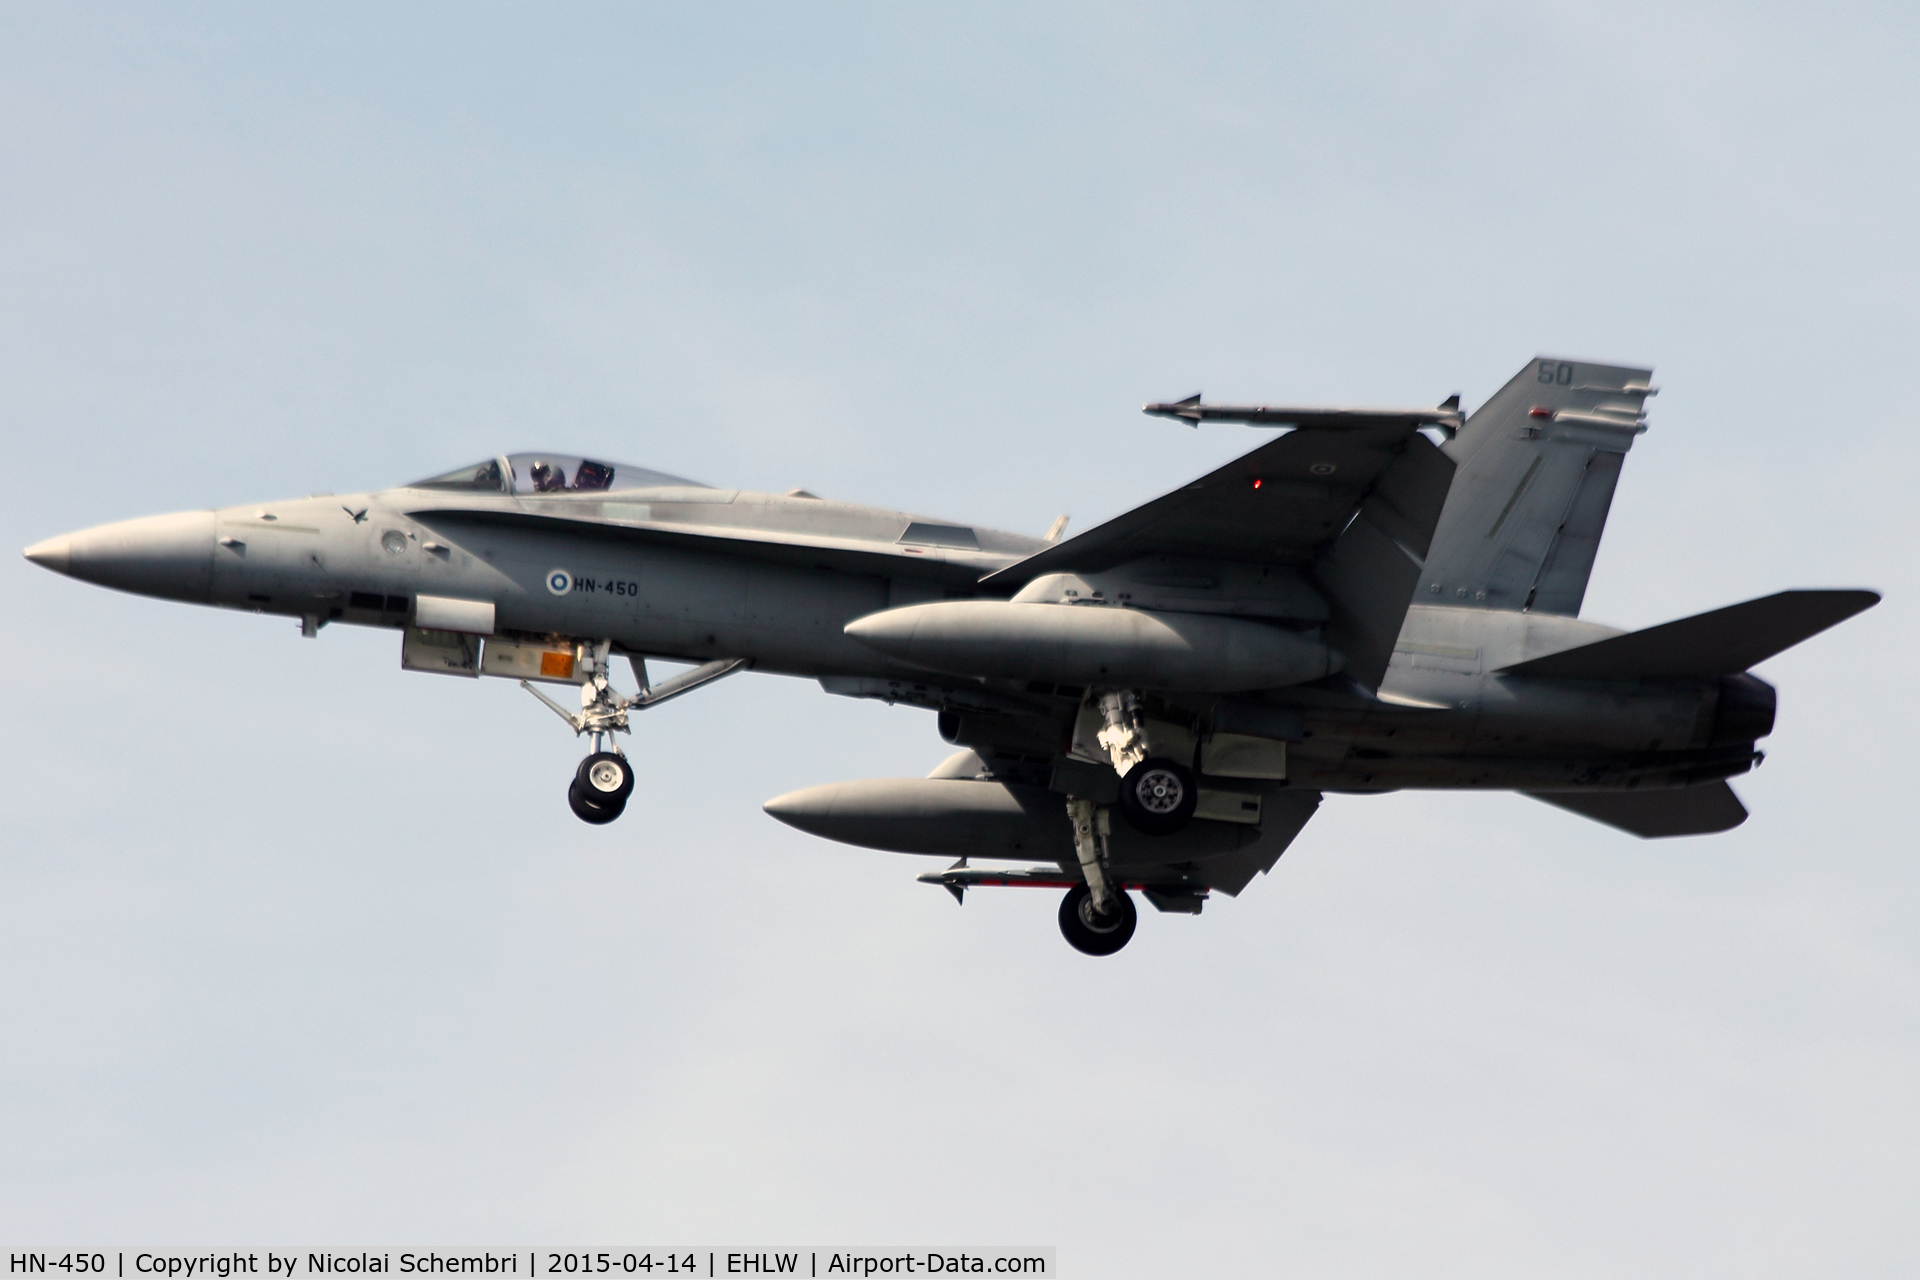 HN-450, McDonnell Douglas F-18C Hornet C/N 1480, Day 2 wave 2 landings